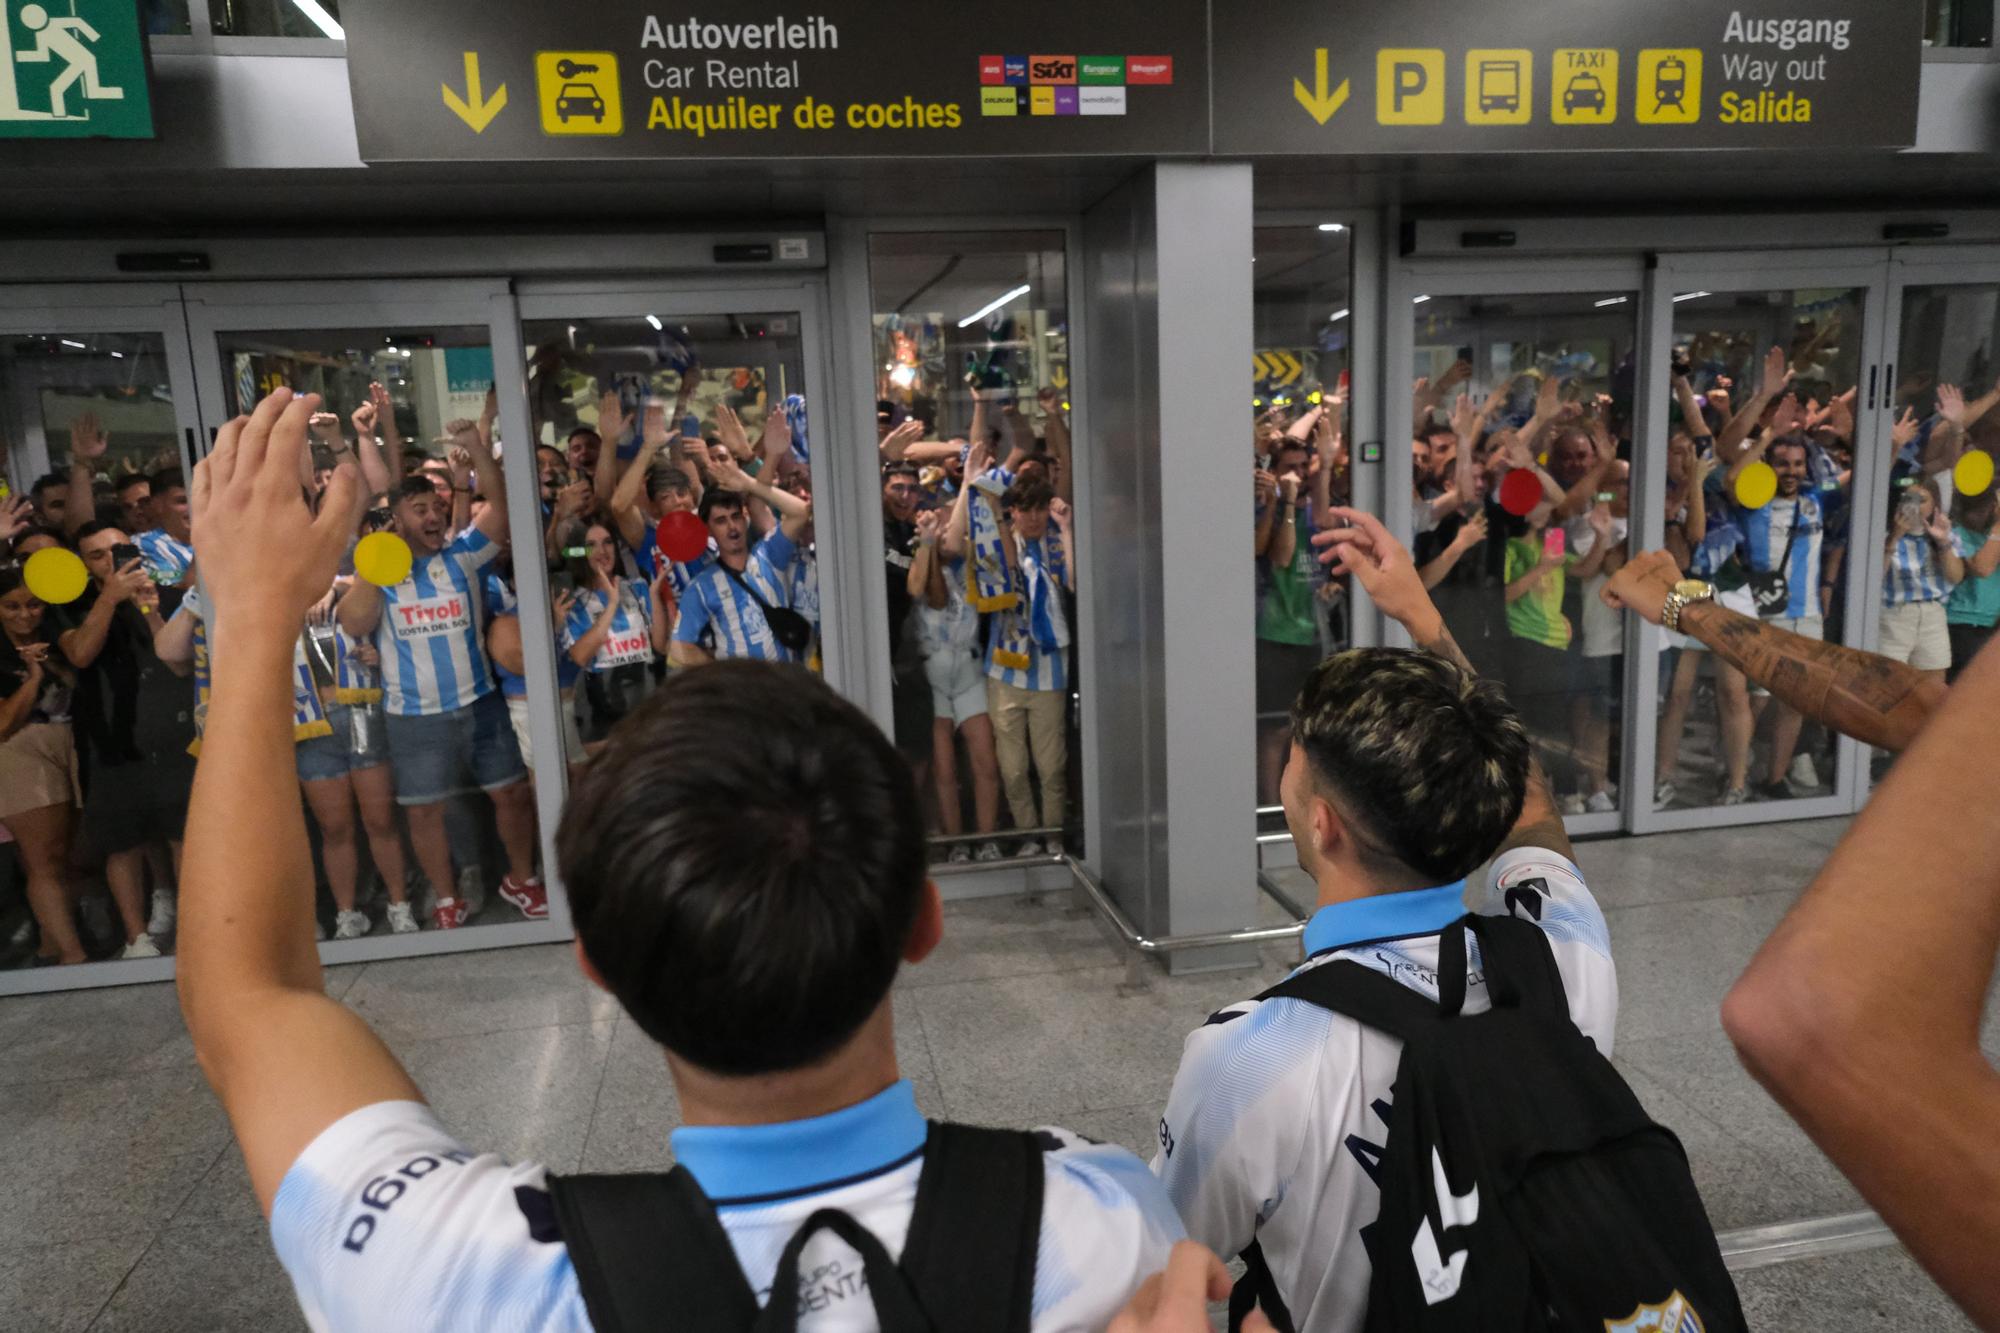 Aeropuerto Málaga: Recibimiento al Málaga CF tras el ascenso a Segunda División